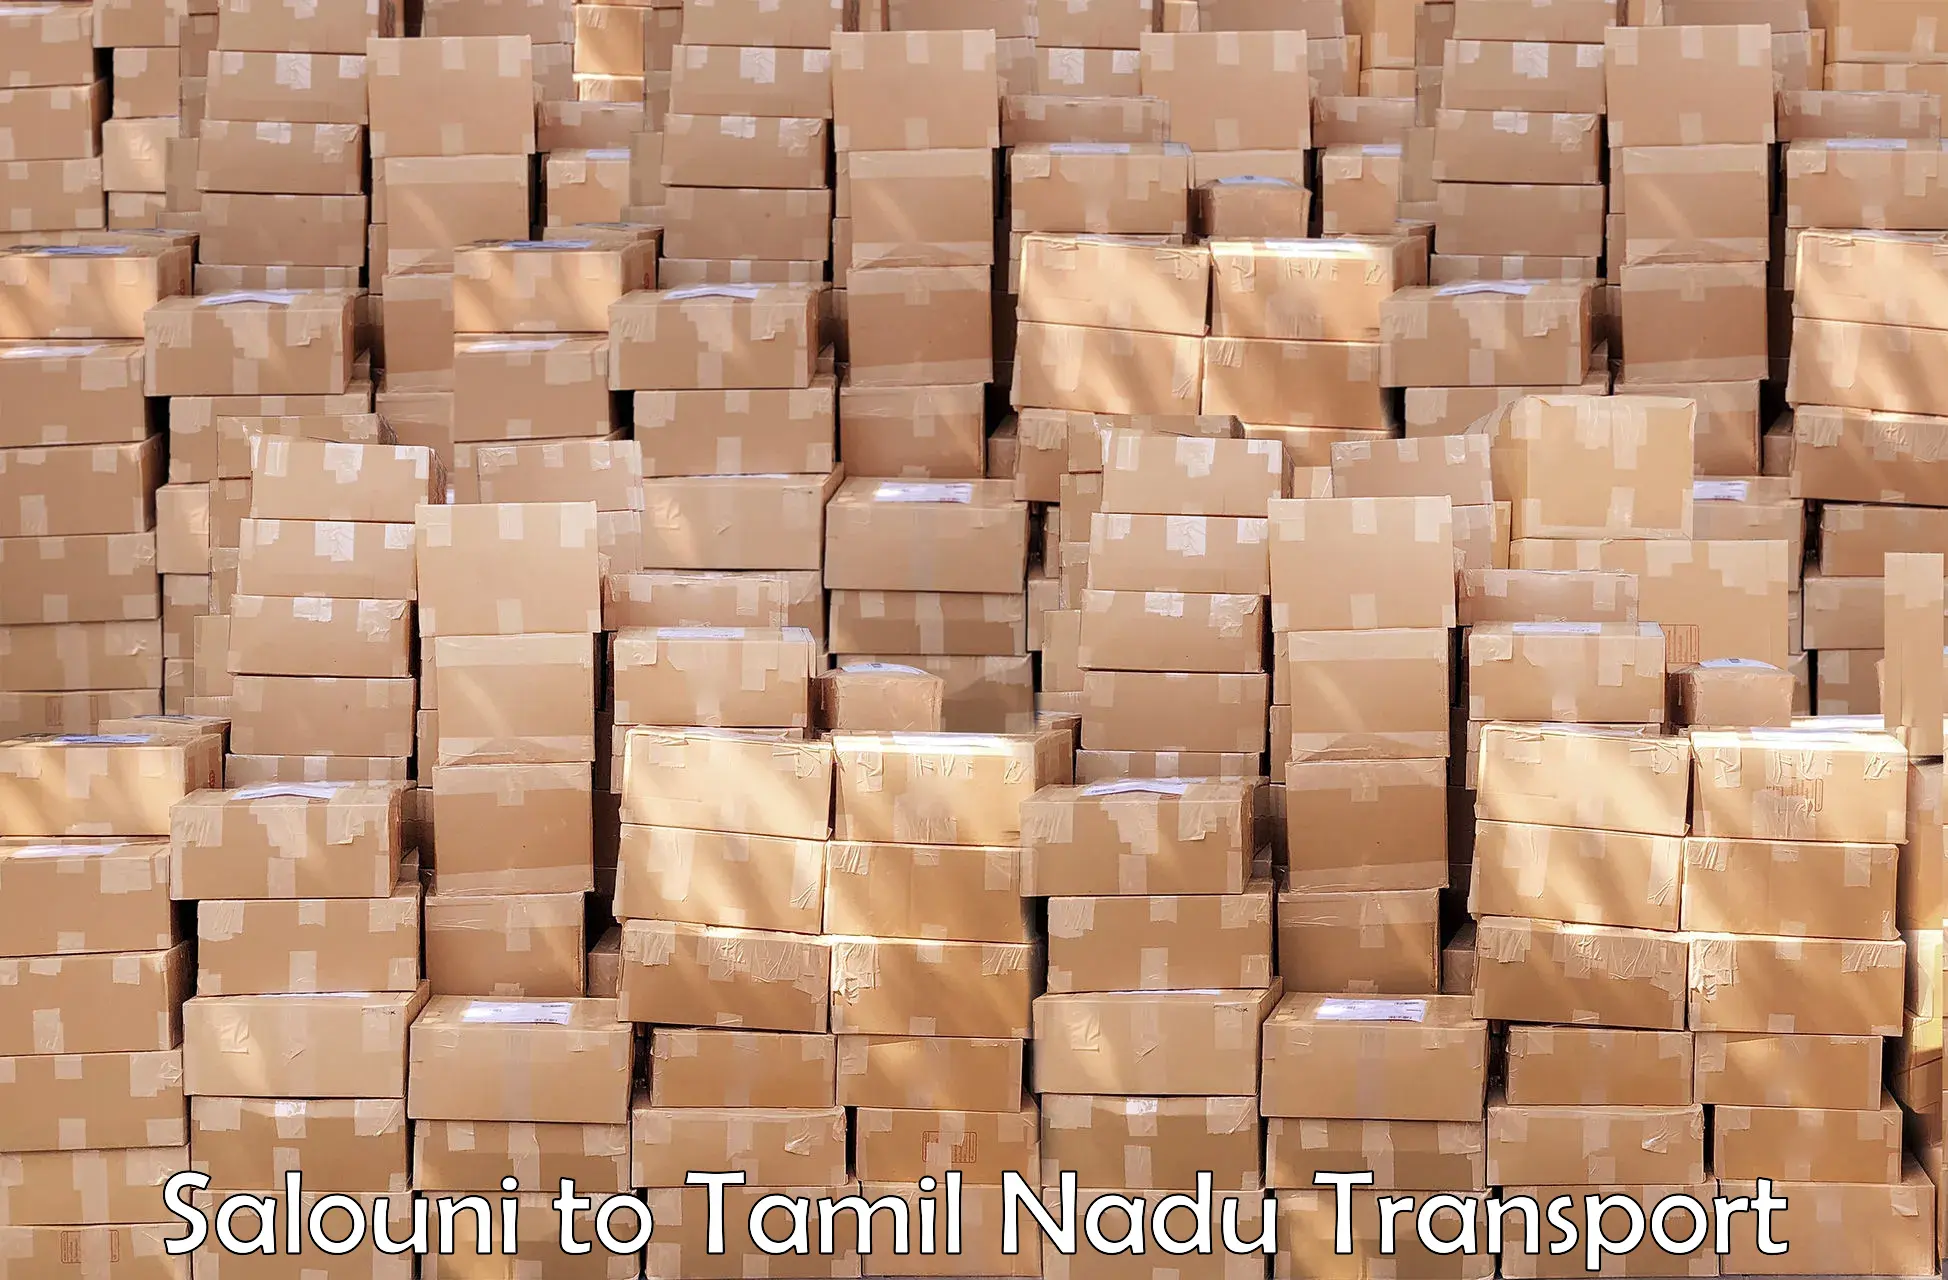 Cargo transport services Salouni to Thiruvadanai